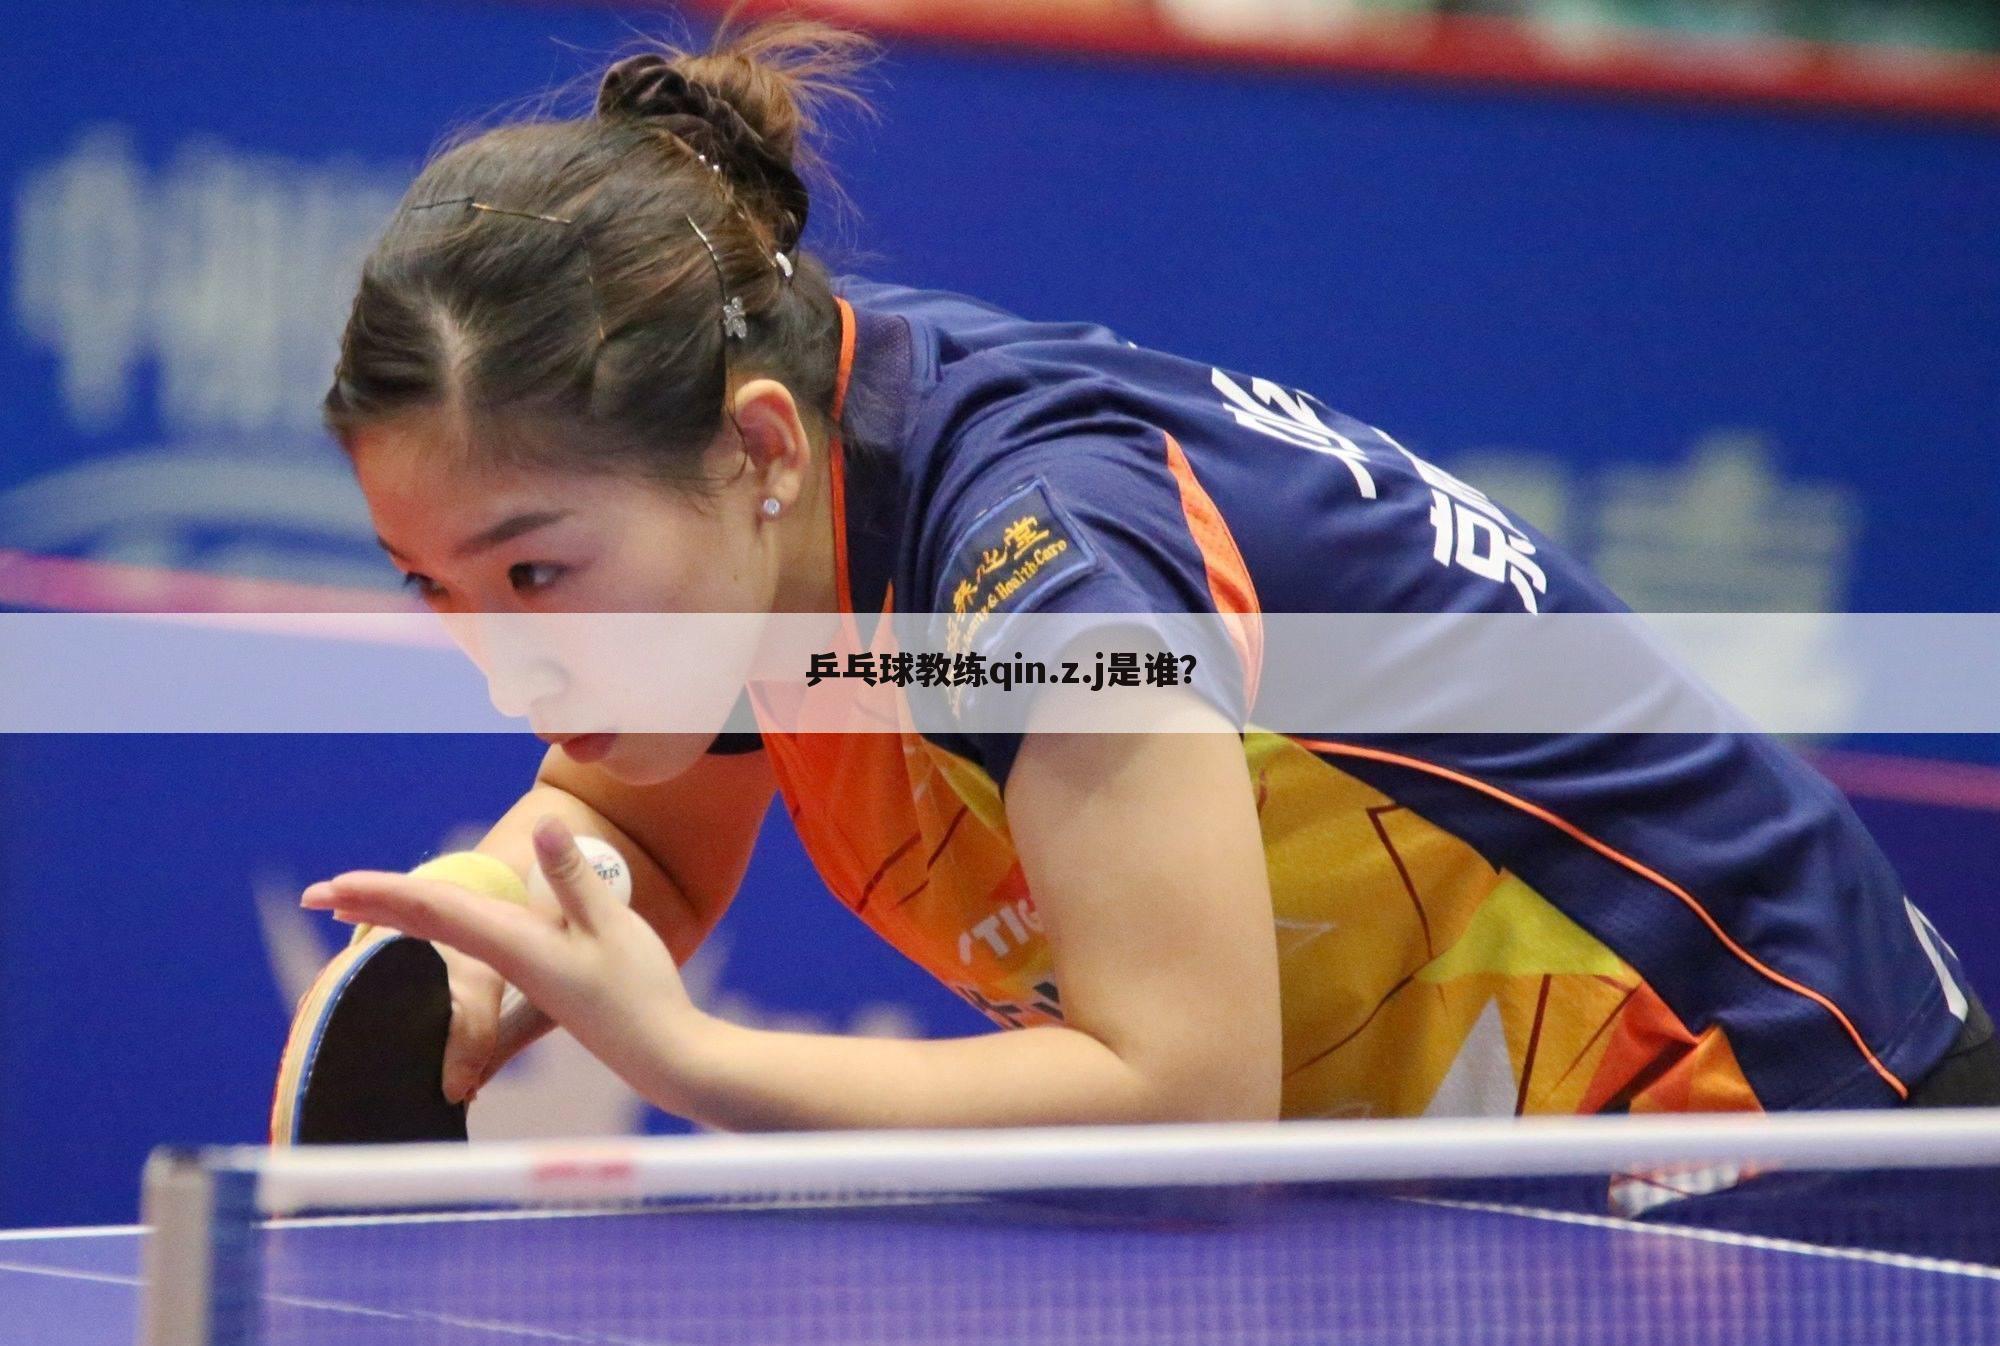 乒乓球教练qin.z.j是谁？